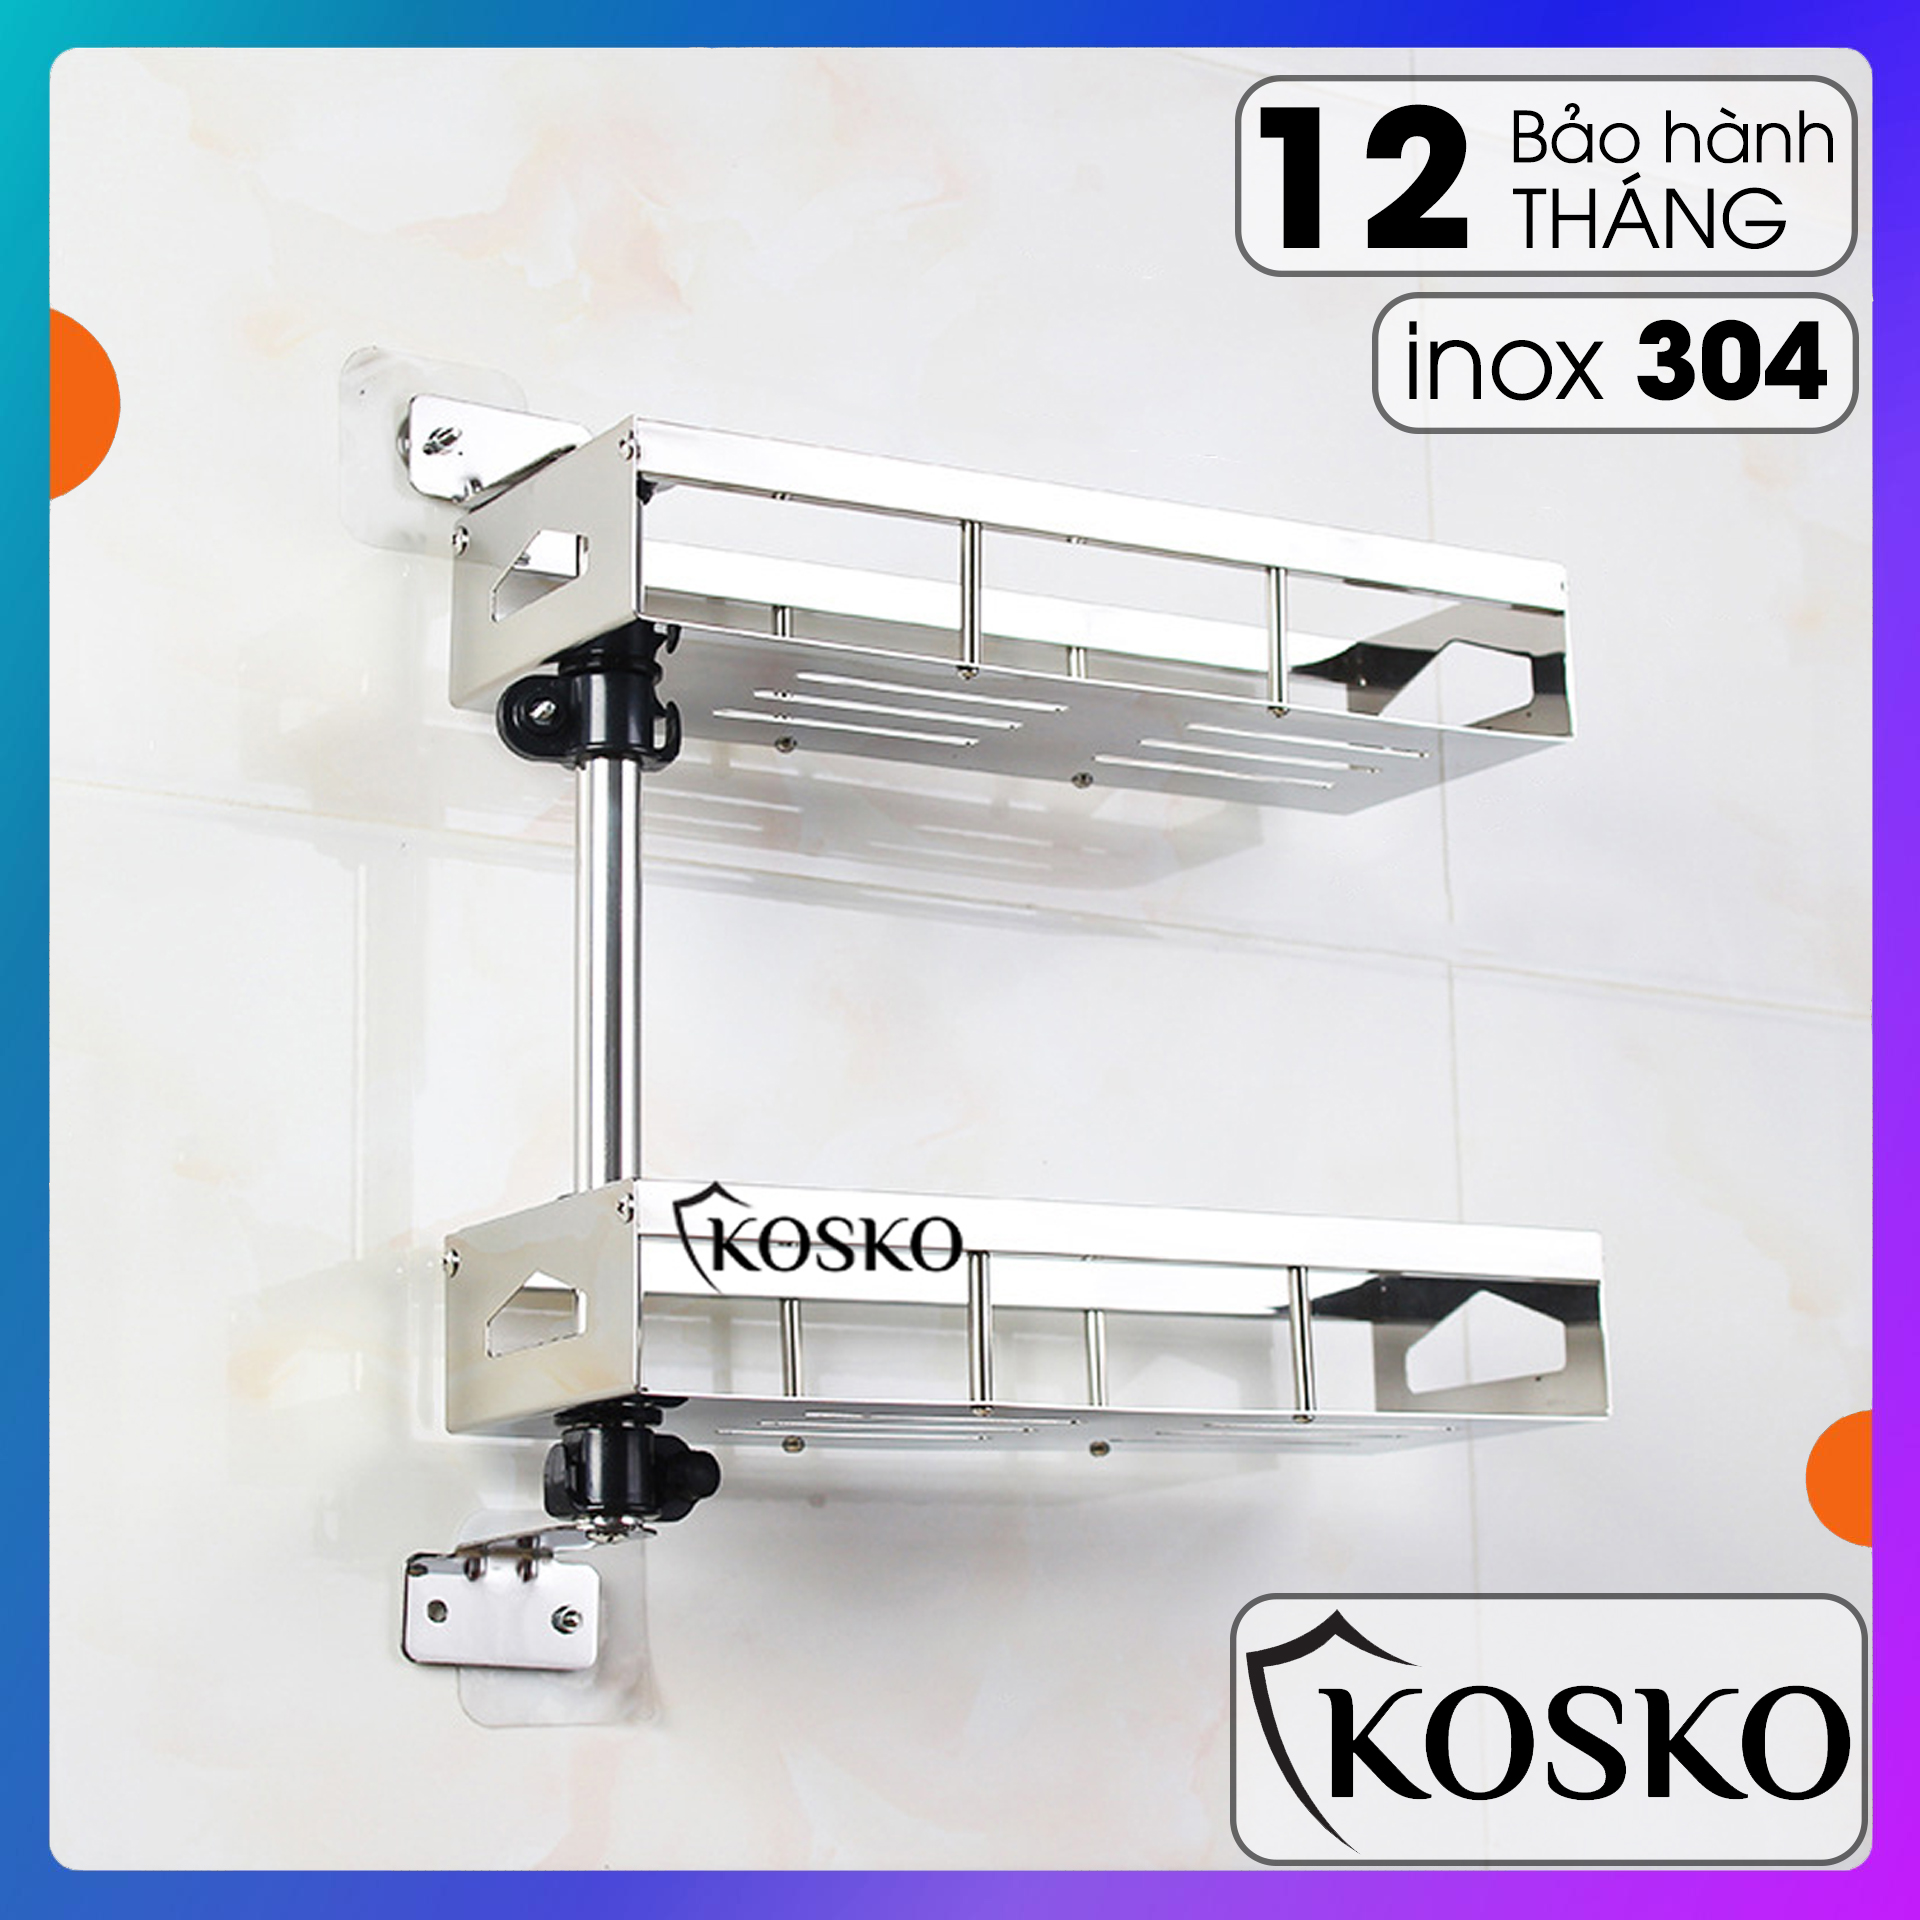 Kệ gia vị inox 304 KOSKO xoay 180 độ 2 tầng dễ dàng lắp đặt không cần gọi